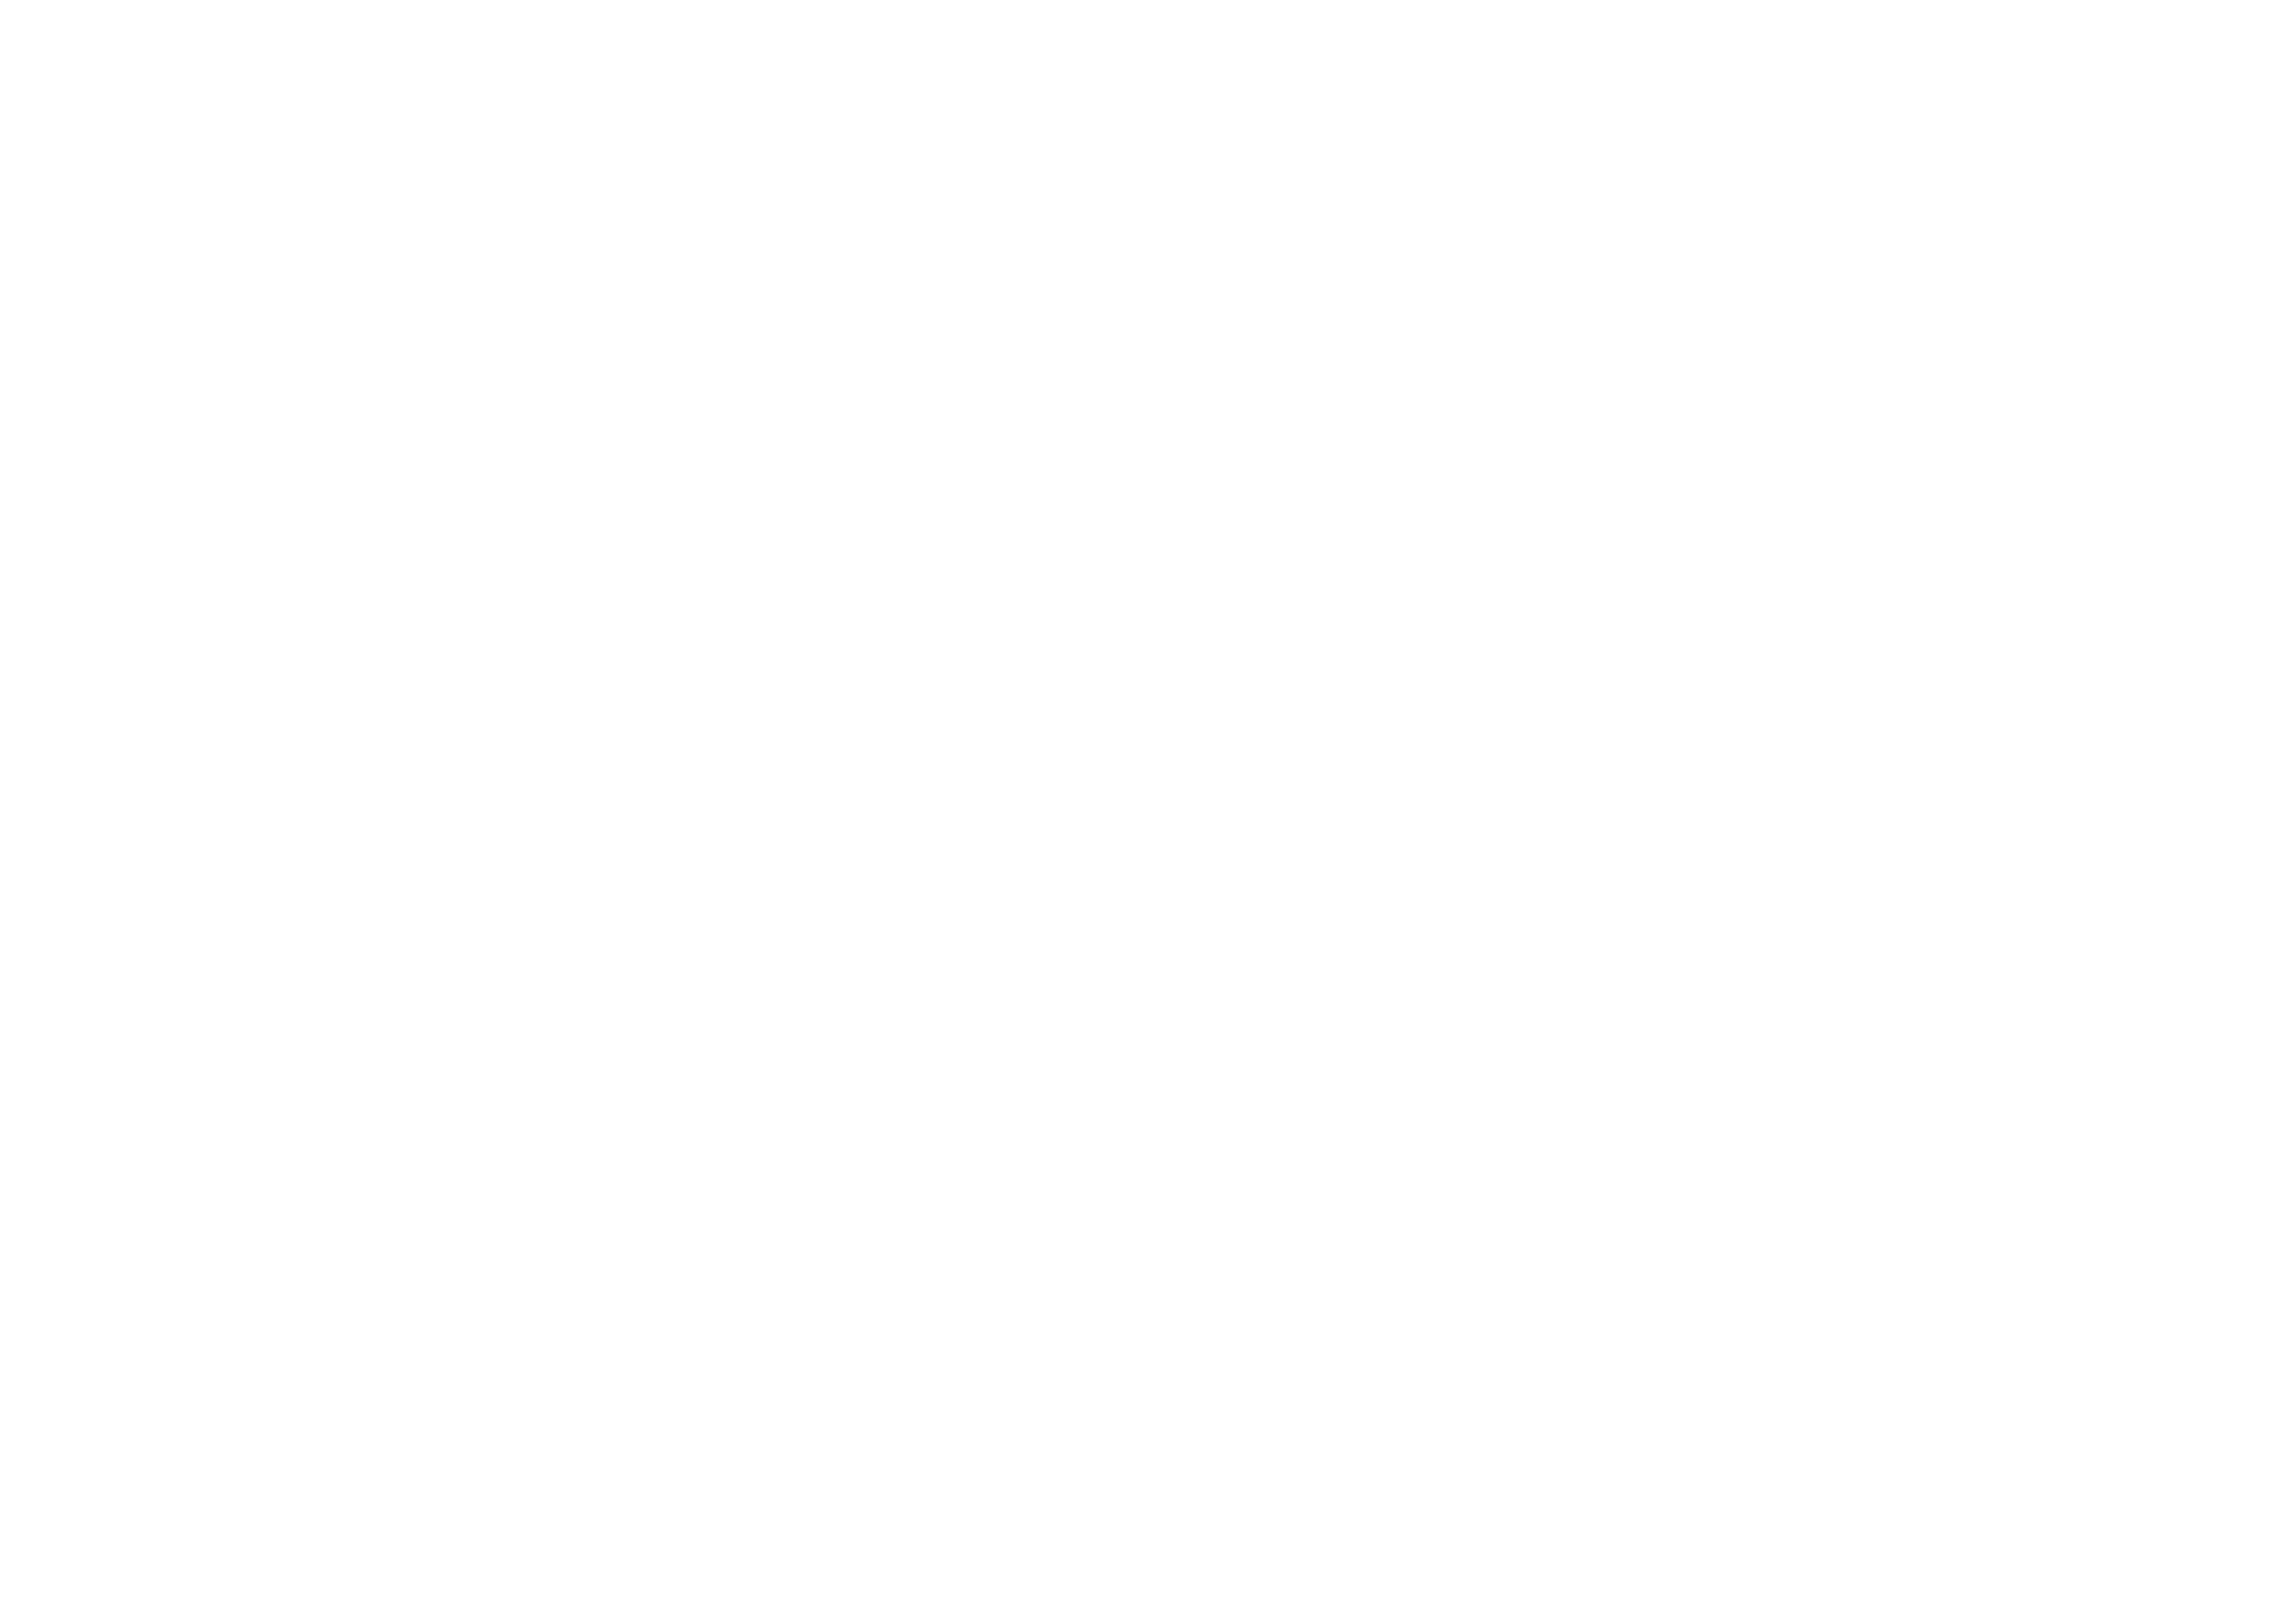 Bailey Fox